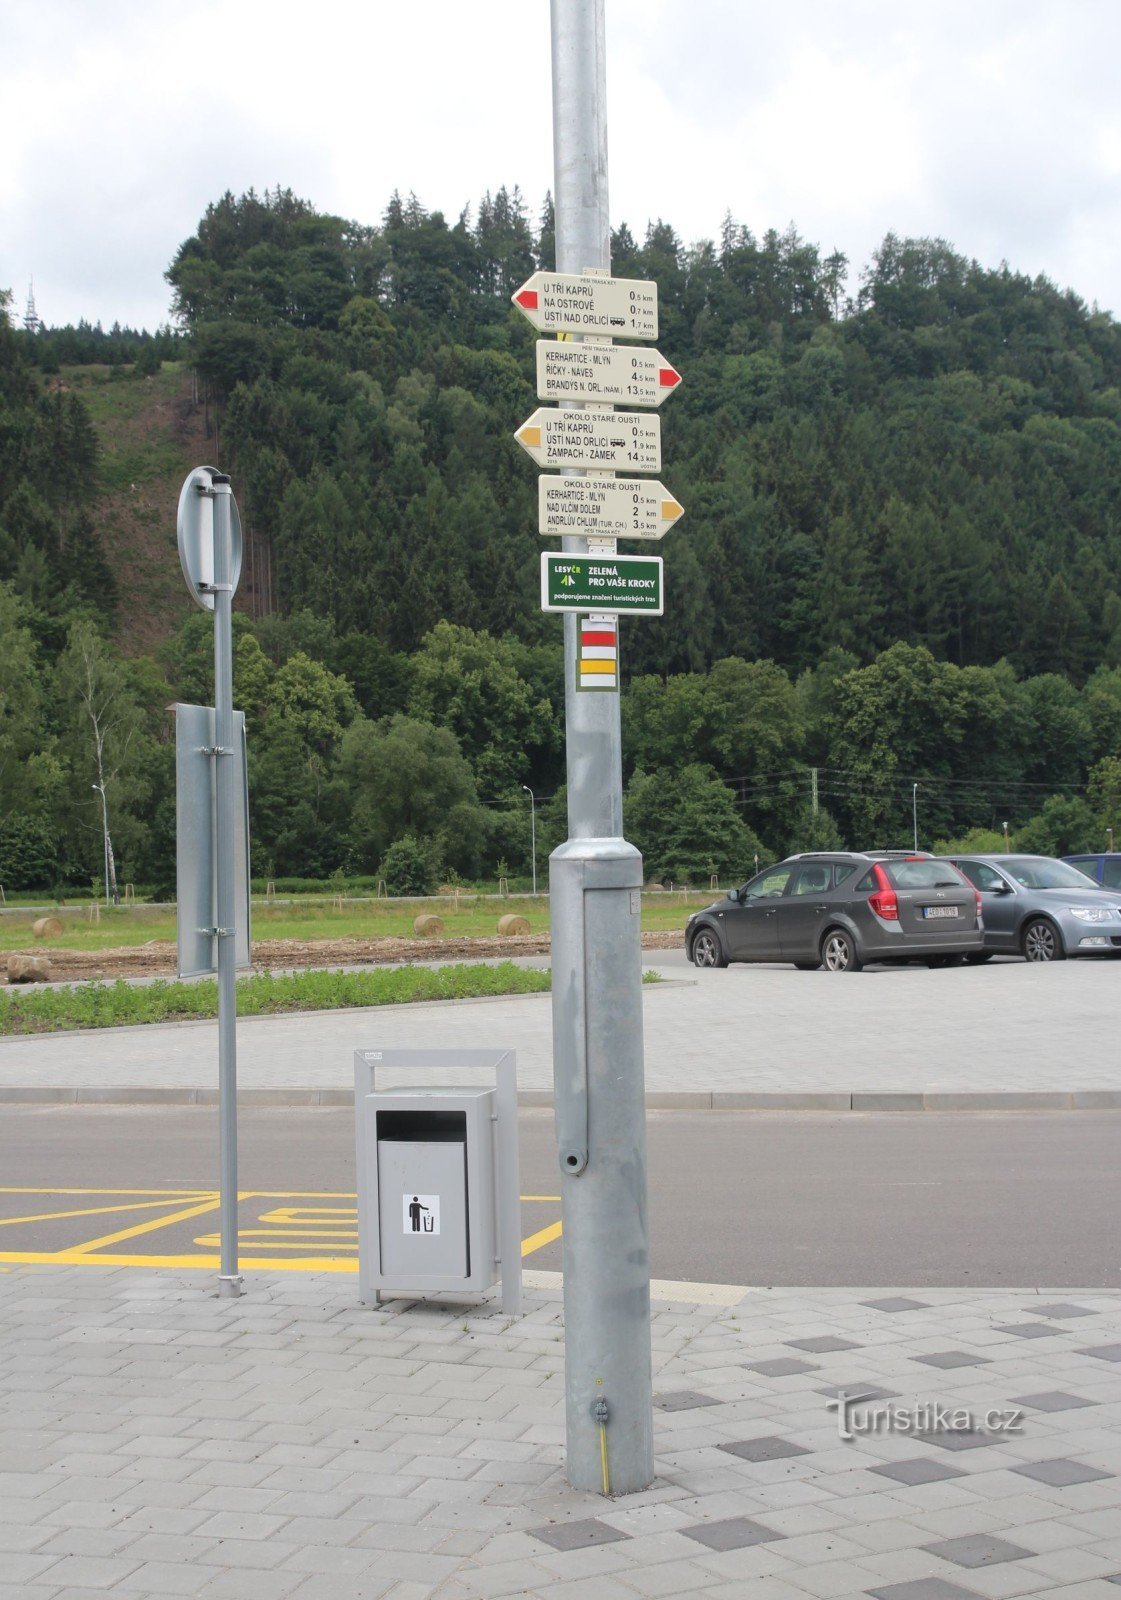 Intersecție turistică Ústí nad Orlicí, autostradă